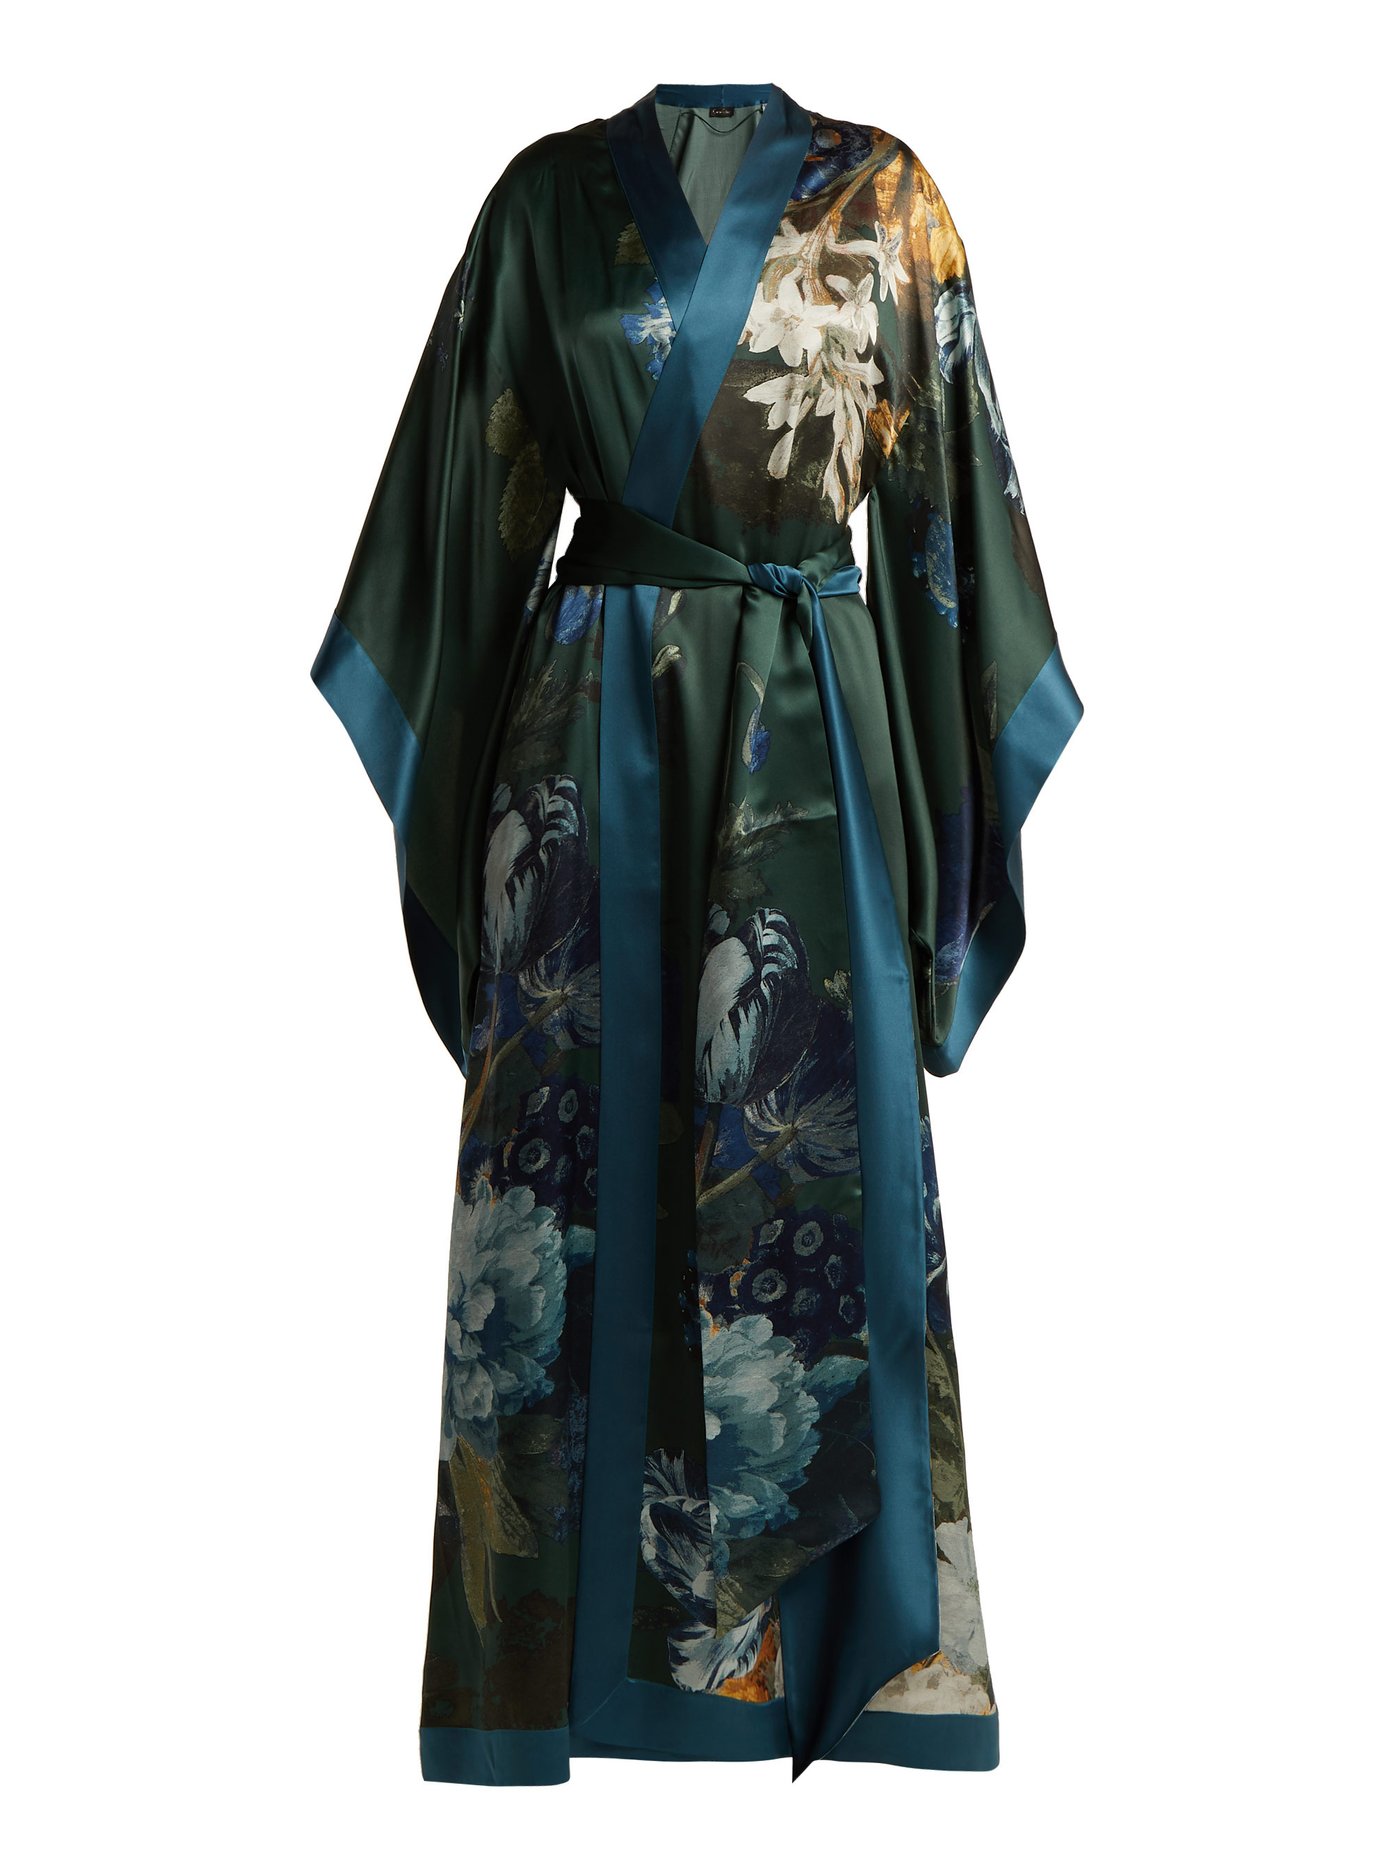 satin floral kimono robe